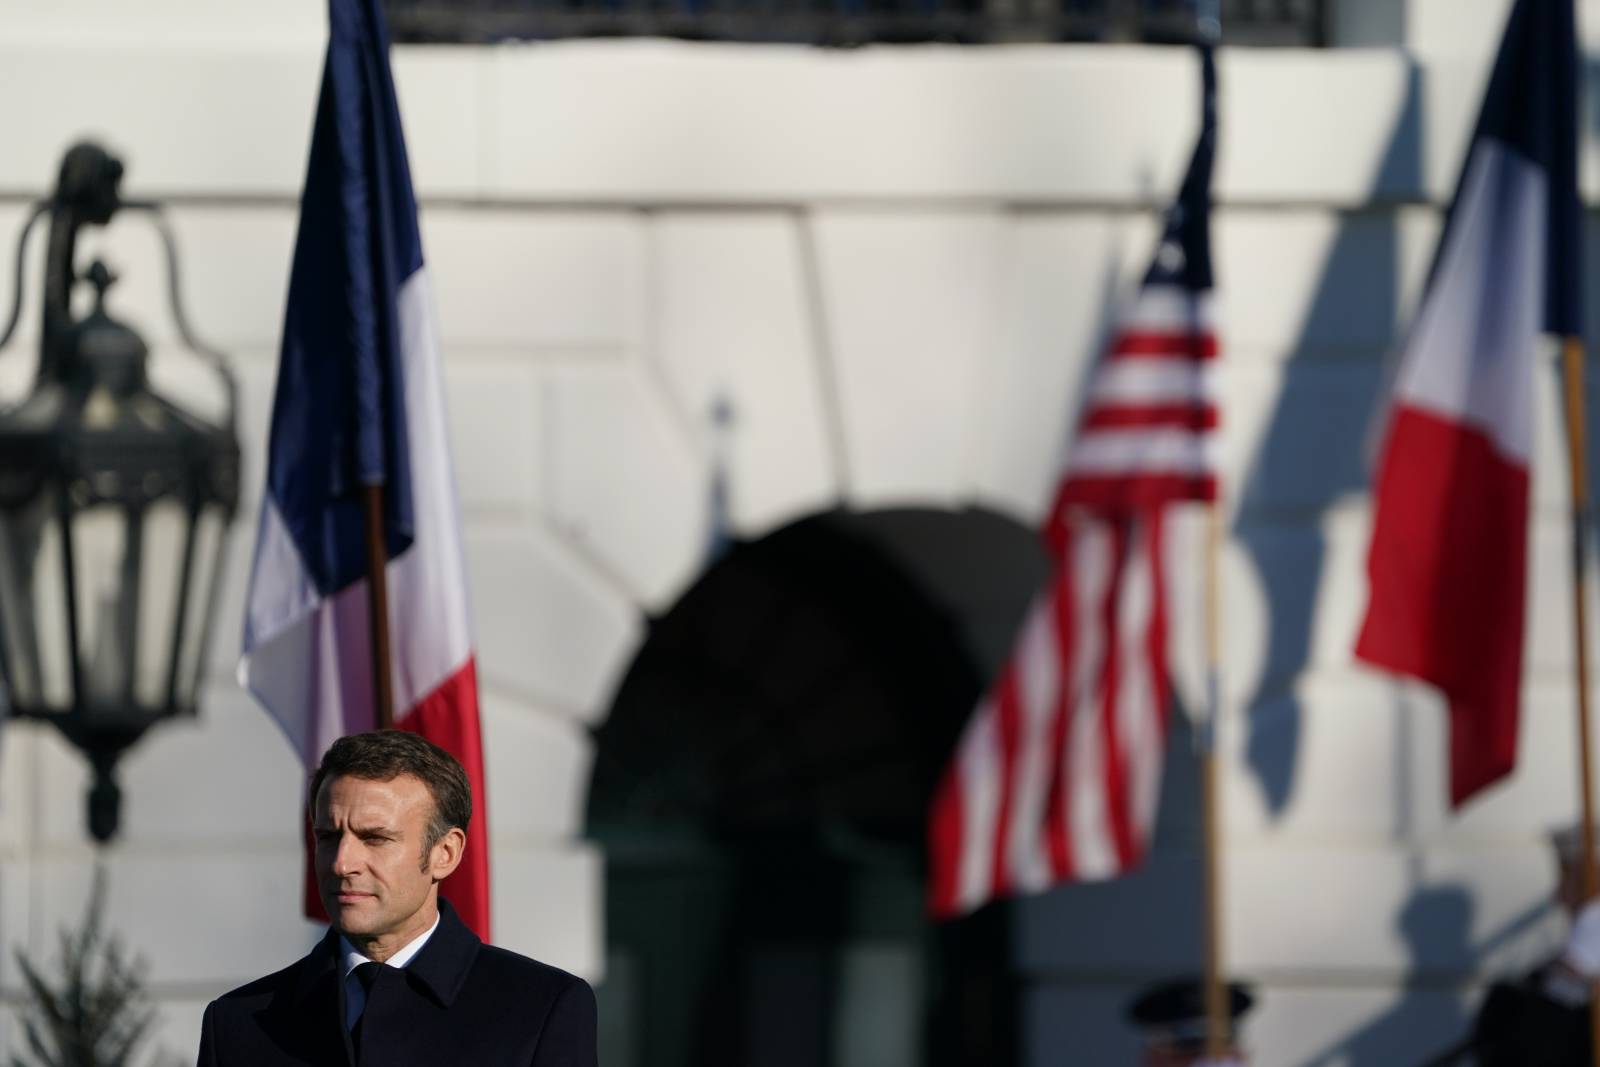 Президент Франции Макрон угадал точный счёт и авторов точных ударов во встрече плей-офф ЧМ с Польшей